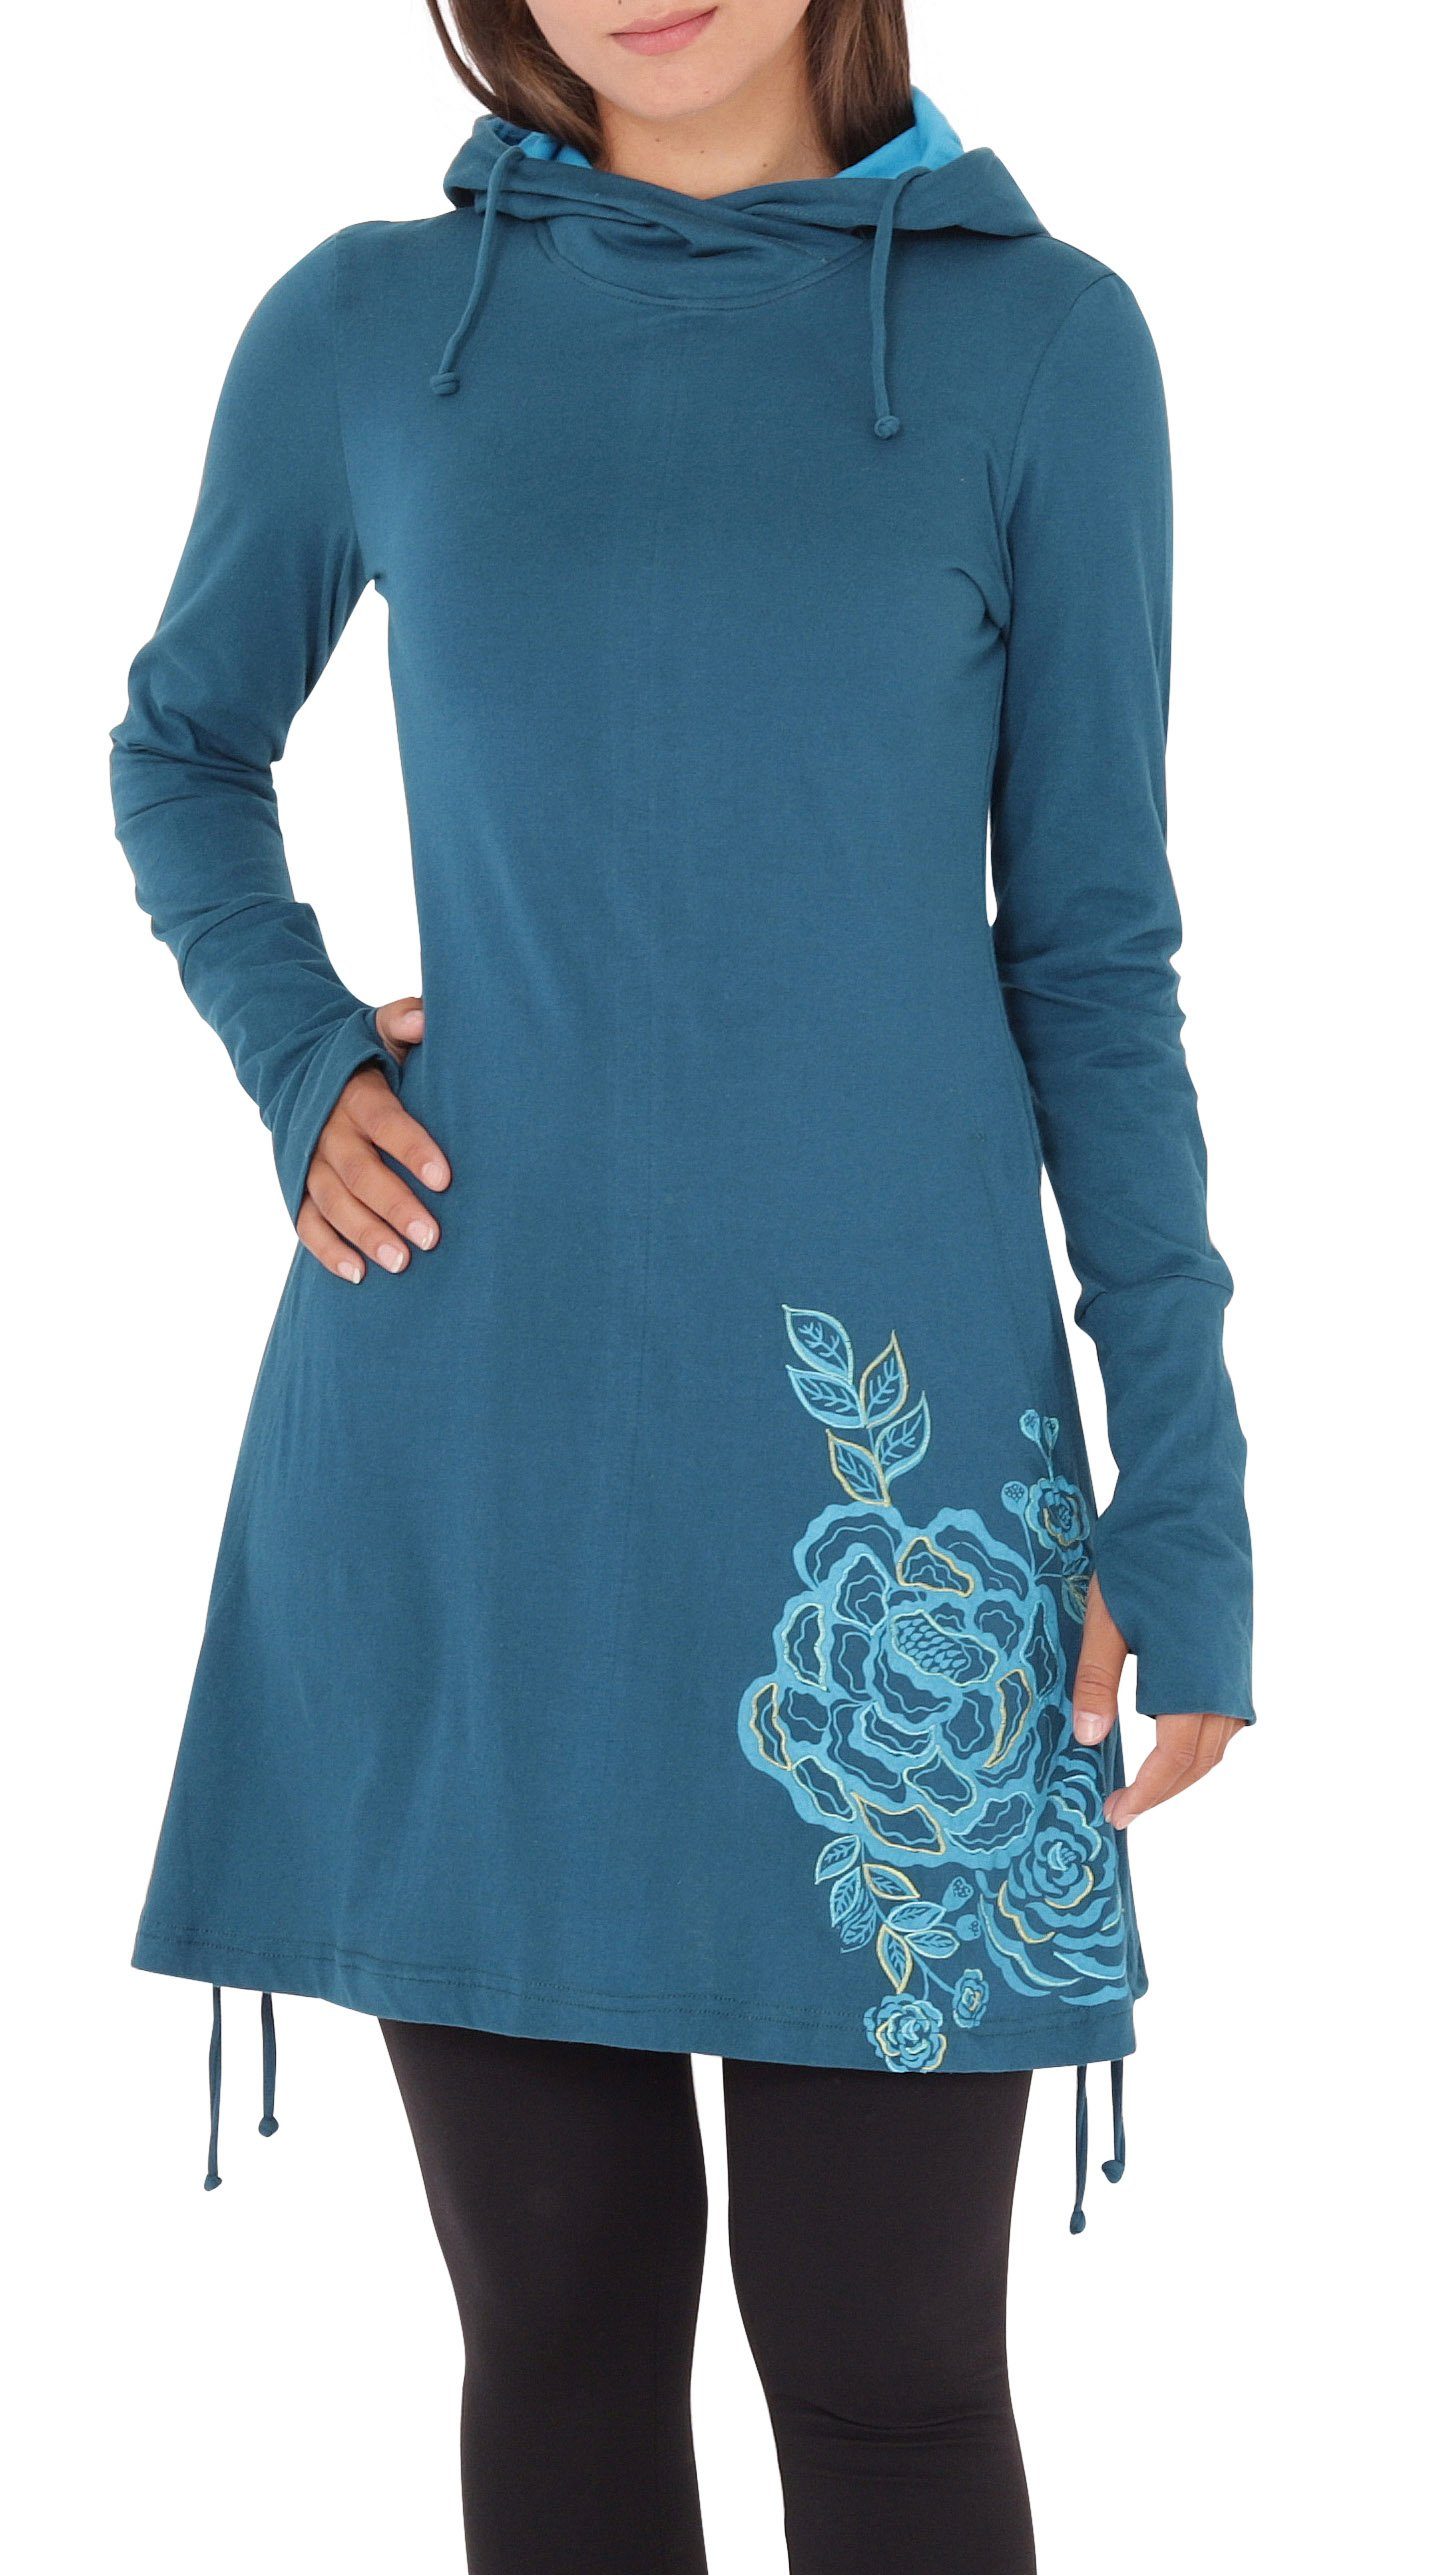 PUREWONDER A-Linien-Kleid Kapuzenkleid mit Blumen-Print dr132 Jersey Blau